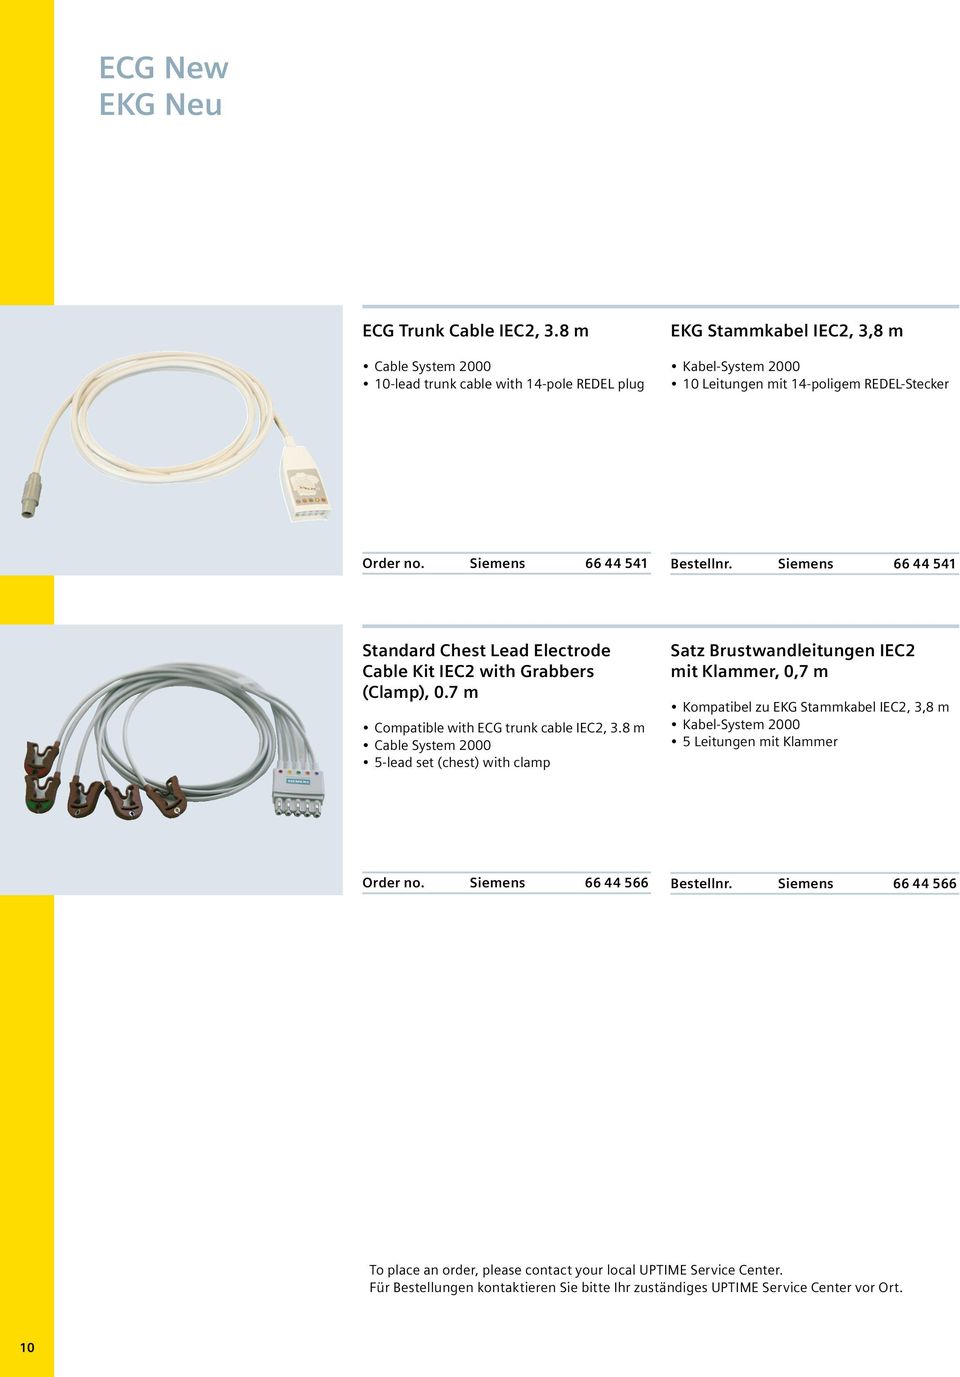 8 m 5-lead set (chest) with clamp Satz Brustwandleitungen IEC2 mit Klammer, 0,7 m Kompatibel zu EKG Stammkabel IEC2, 3,8 m 5 Leitungen mit Klammer Order no.